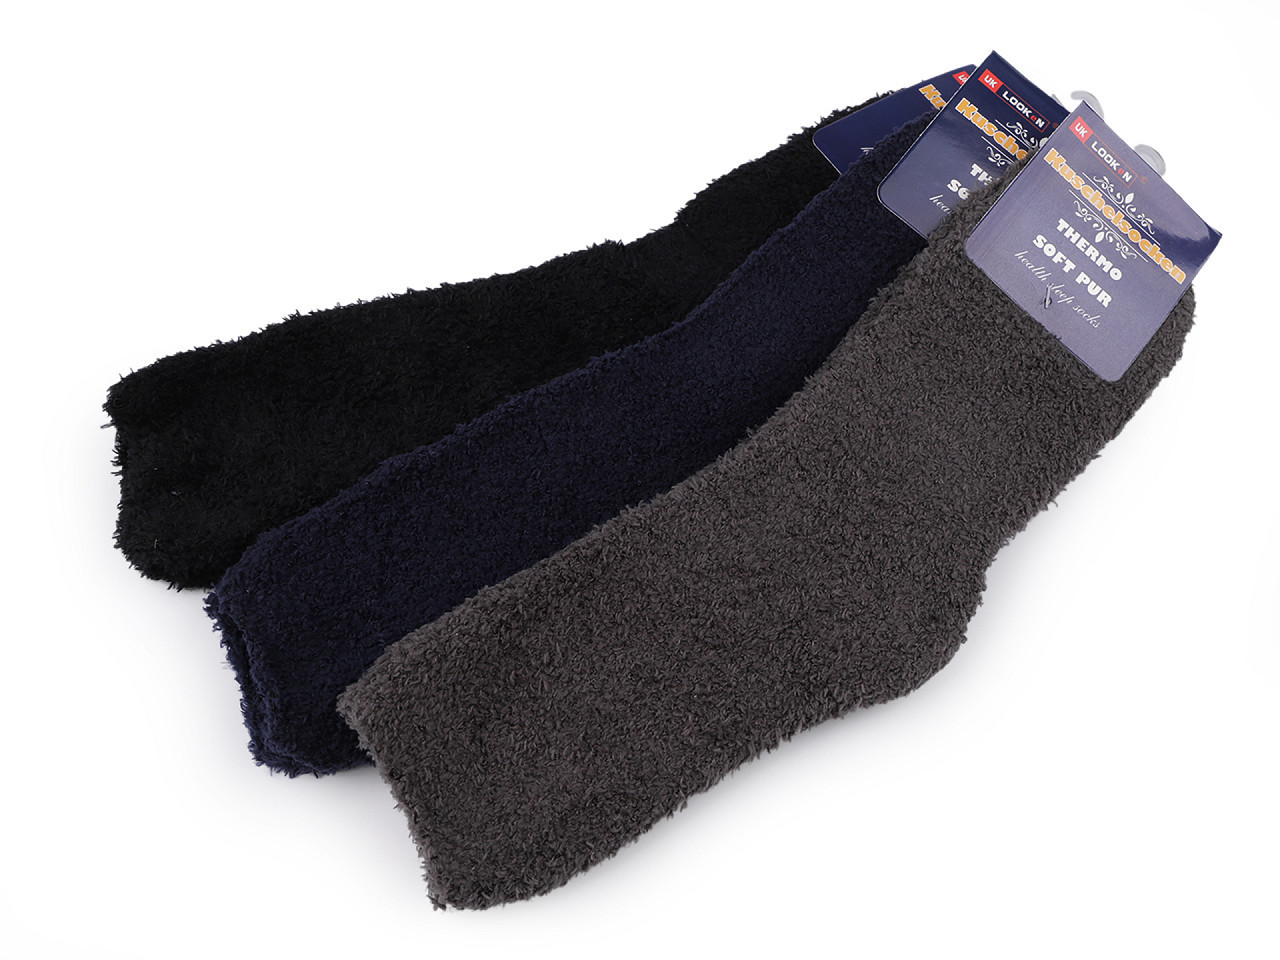 Pánské ponožky froté, barva 14 (vel. 43-47) mix tmavý